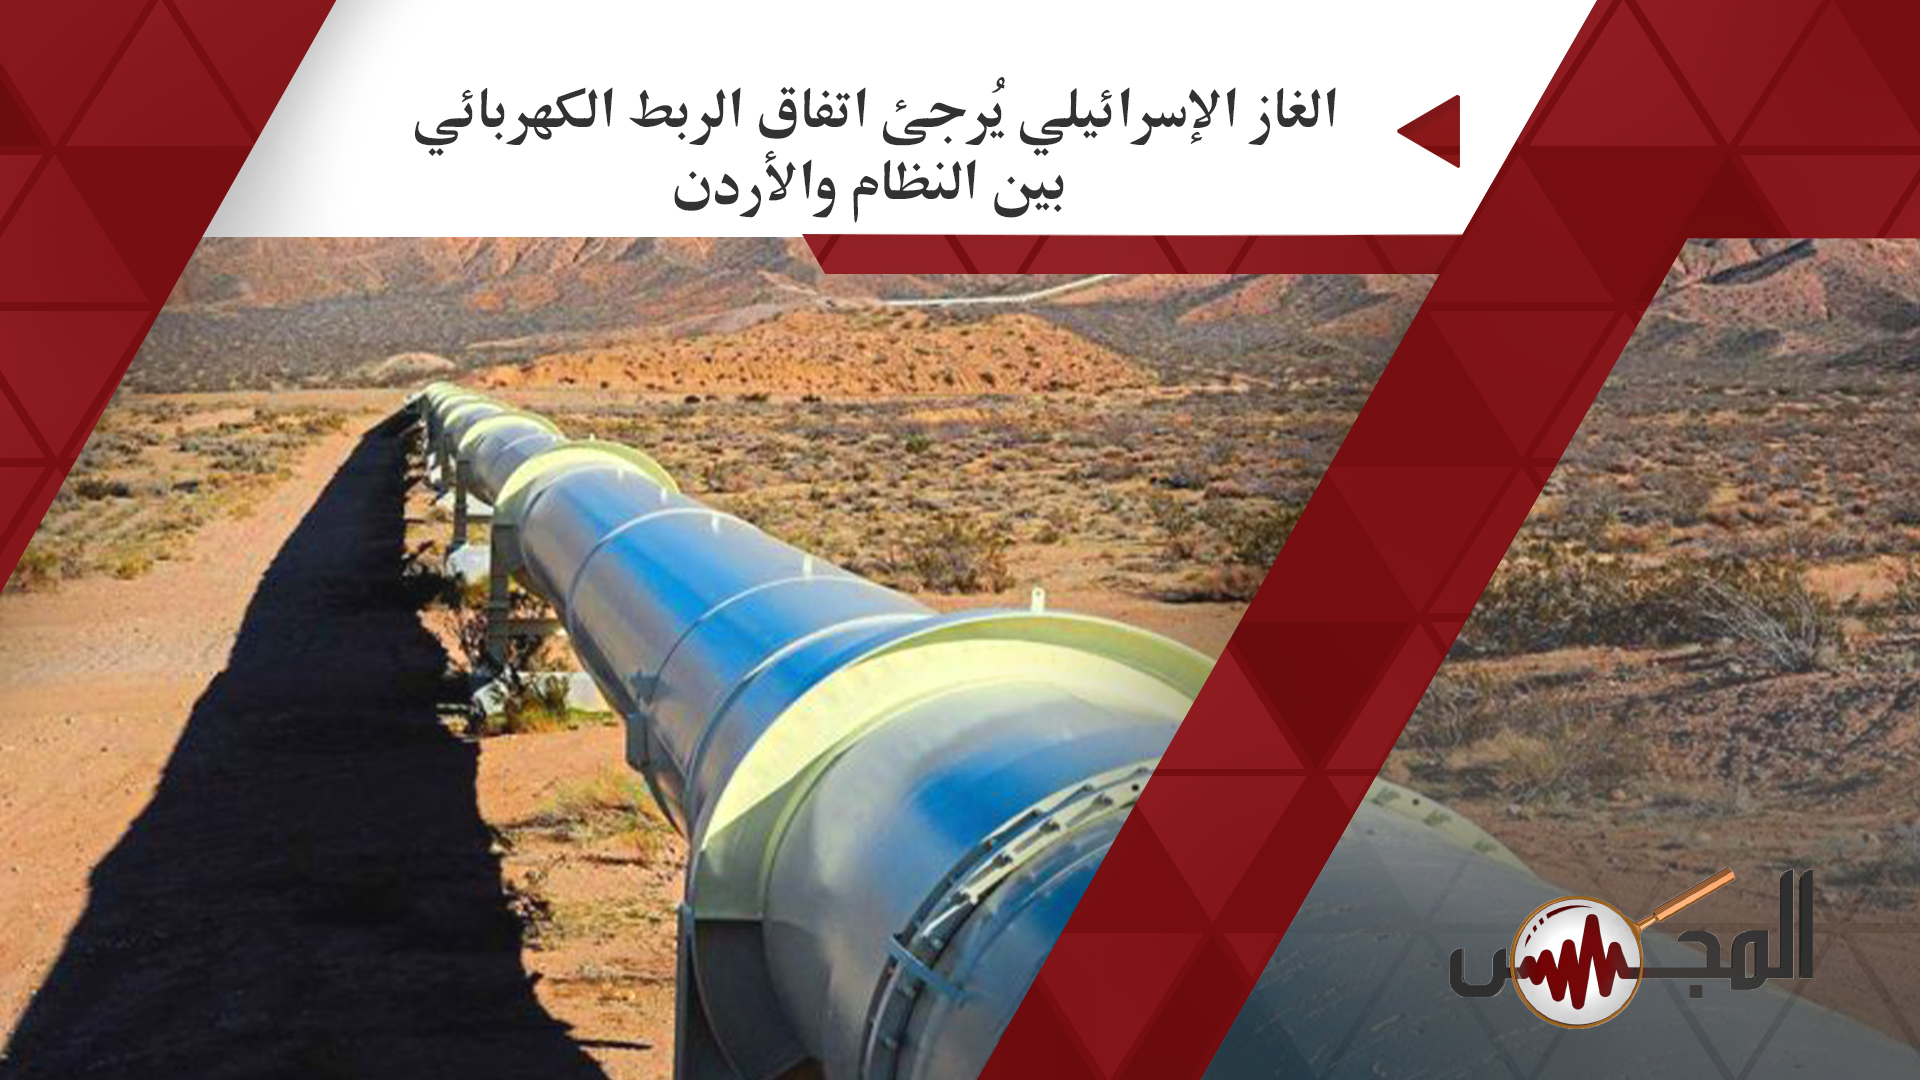 الغاز الإسرائيلي يُرجئ اتفاق الربط الكهربائي بين النظام والأردن